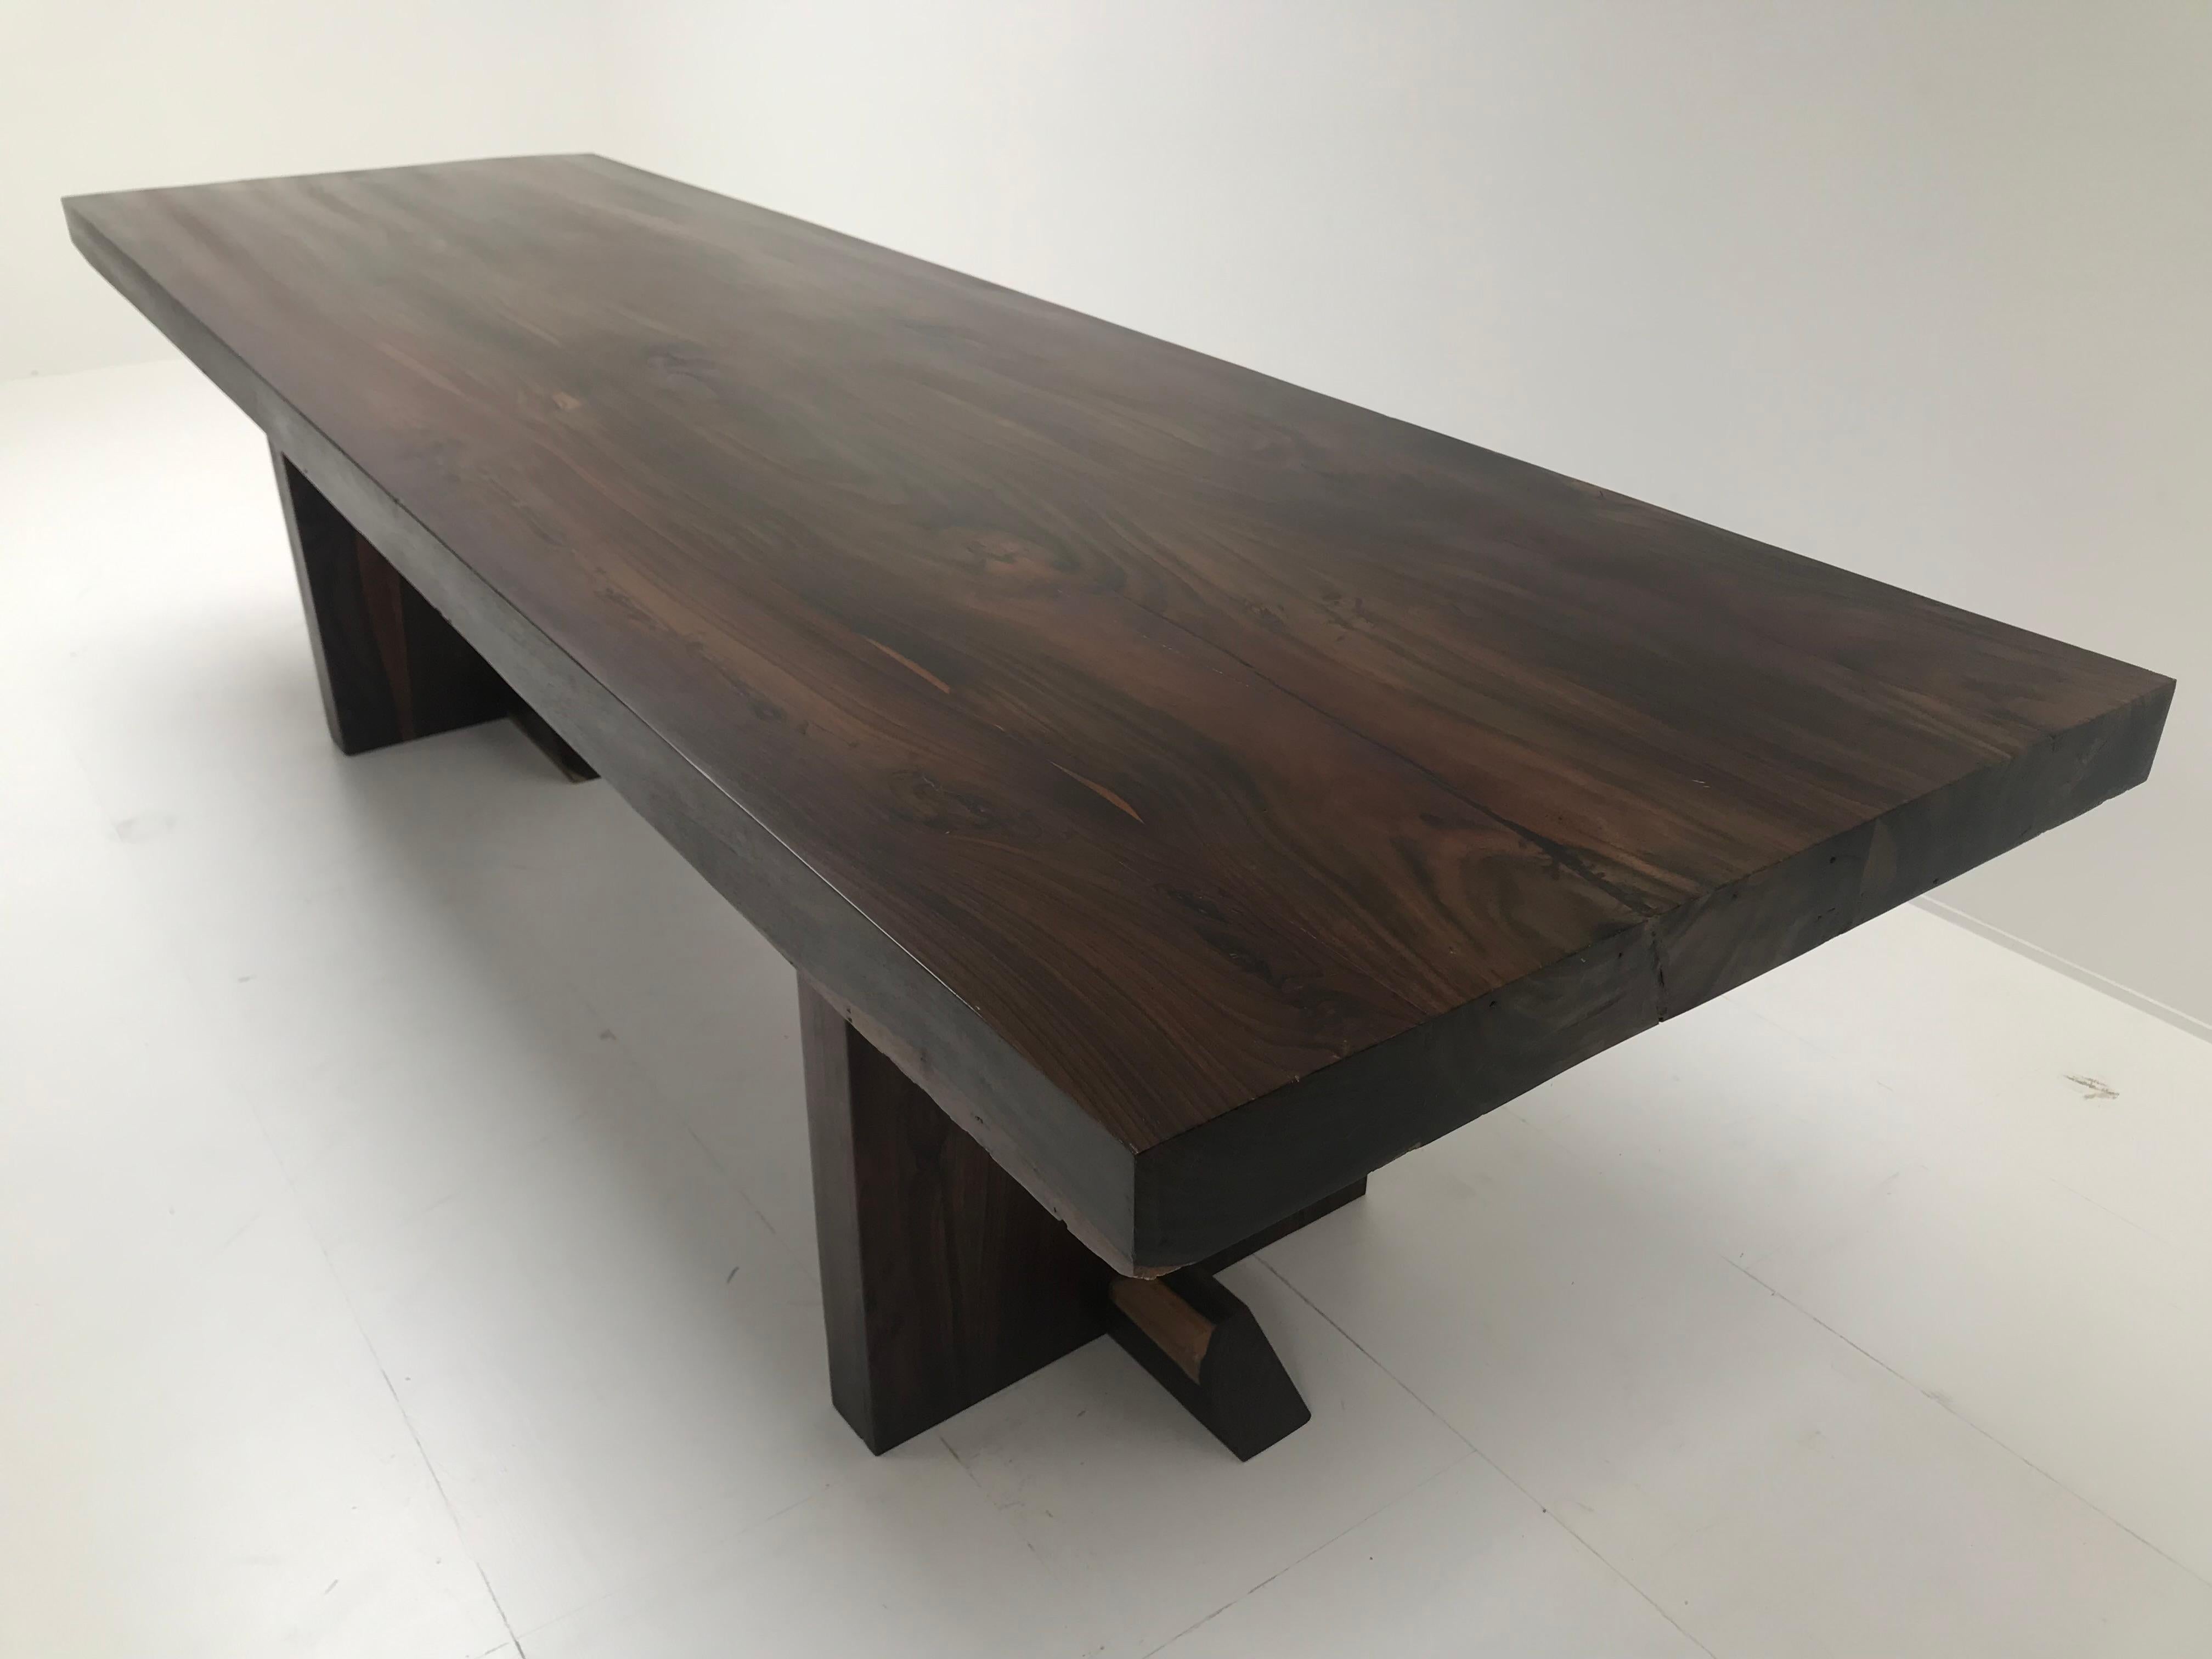 Außergewöhnlicher moderner Tisch aus poliertem Buchenholz, Holzquadratfuß,

großartiger Glanz des Holzes, sehr einfaches aber kraftvolles Design,

kann als Esstisch oder als Schreibtisch verwendet werden